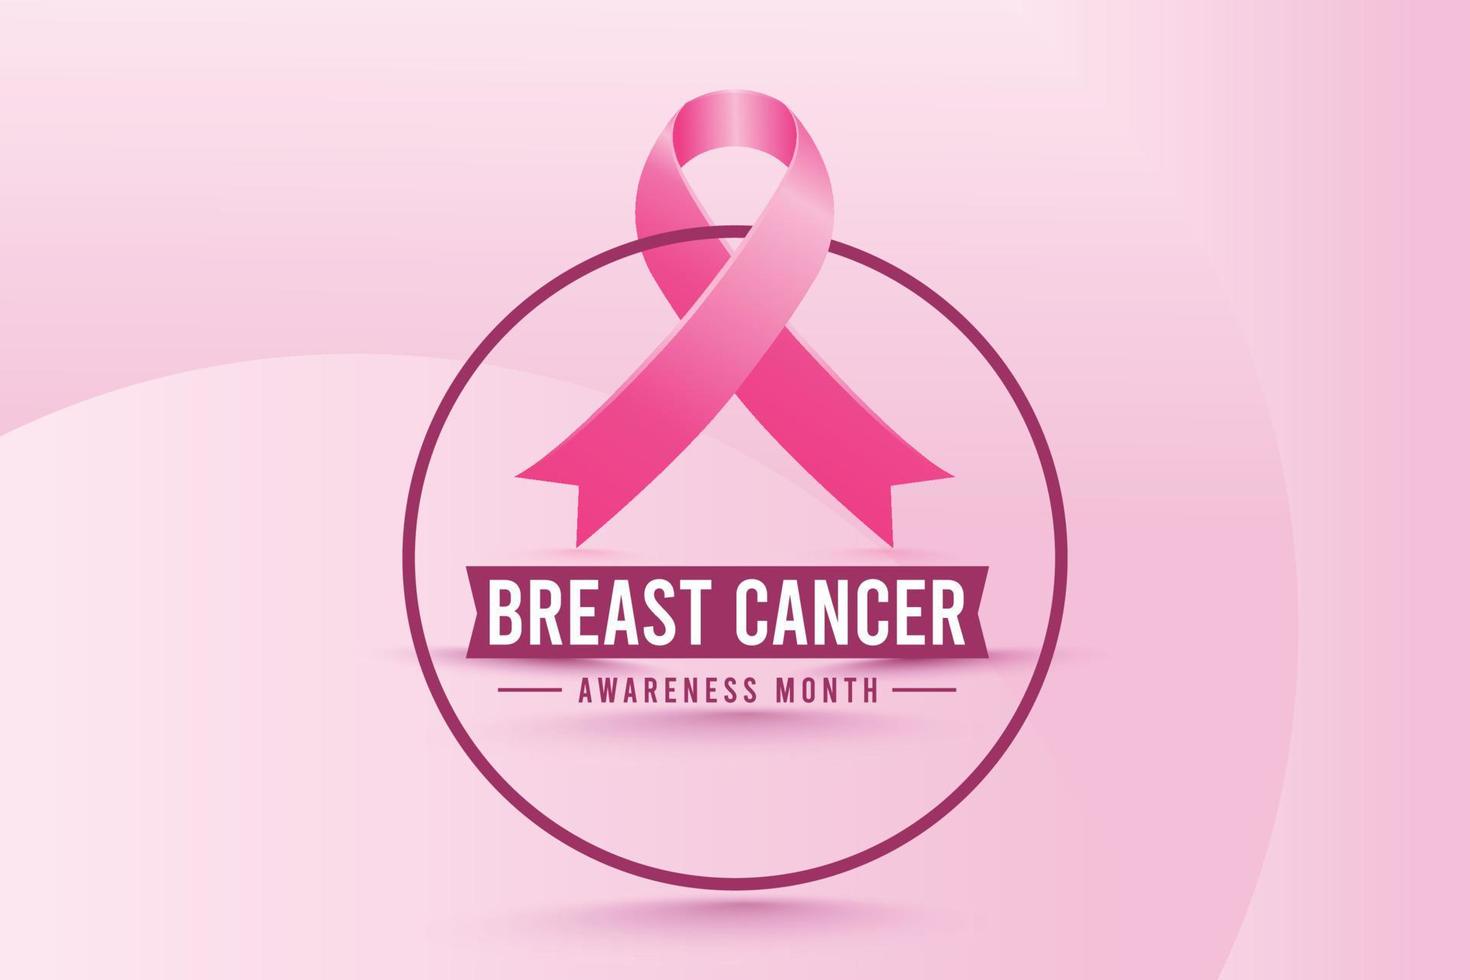 design de plano de fundo do mês de conscientização do câncer de mama com fita de seda rosa realista vetor